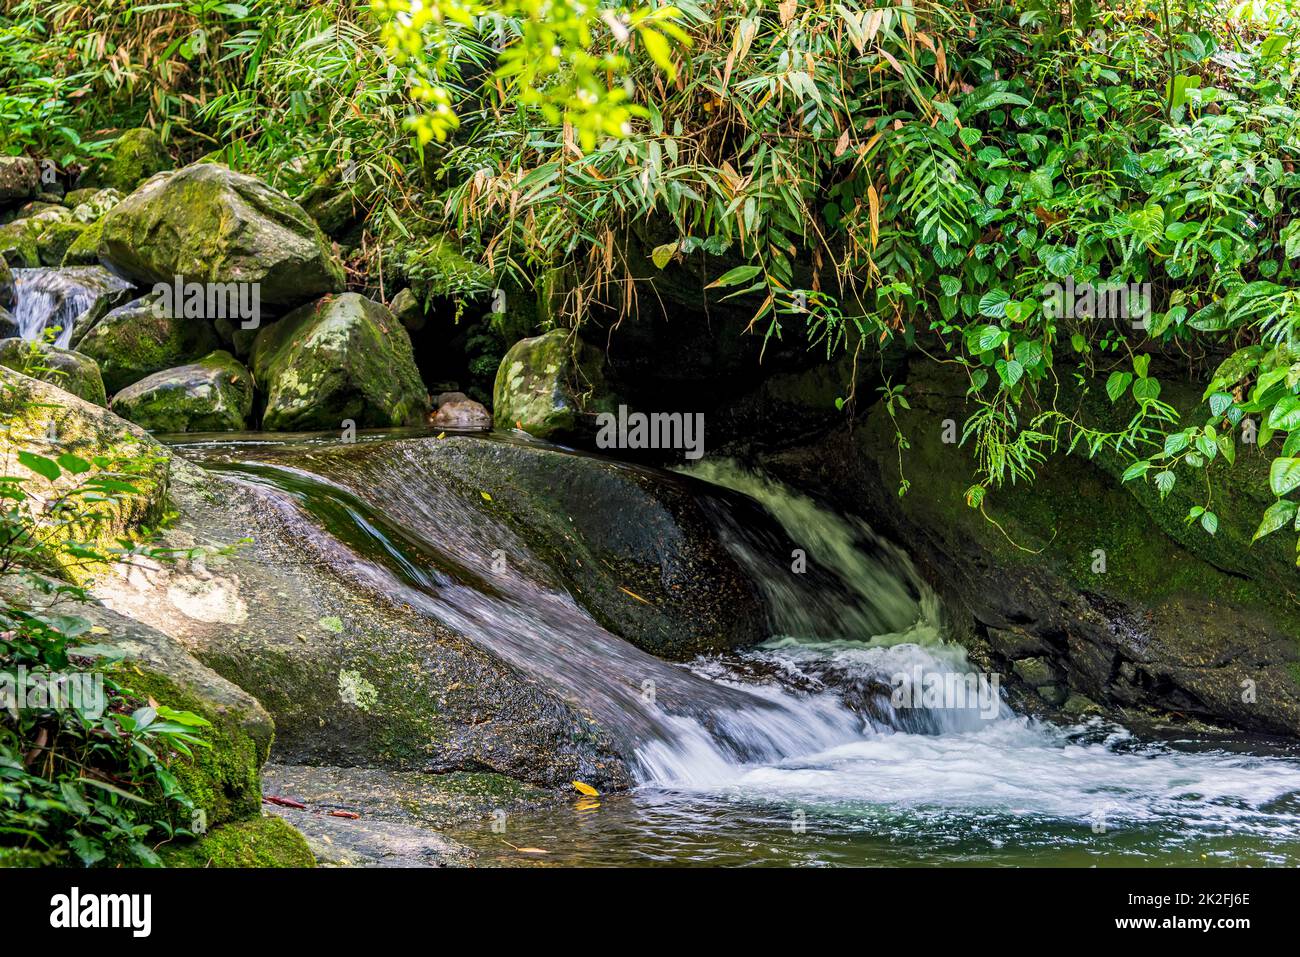 Cascade et roches moussy parmi la végétation de la forêt tropicale dans son état naturel Banque D'Images